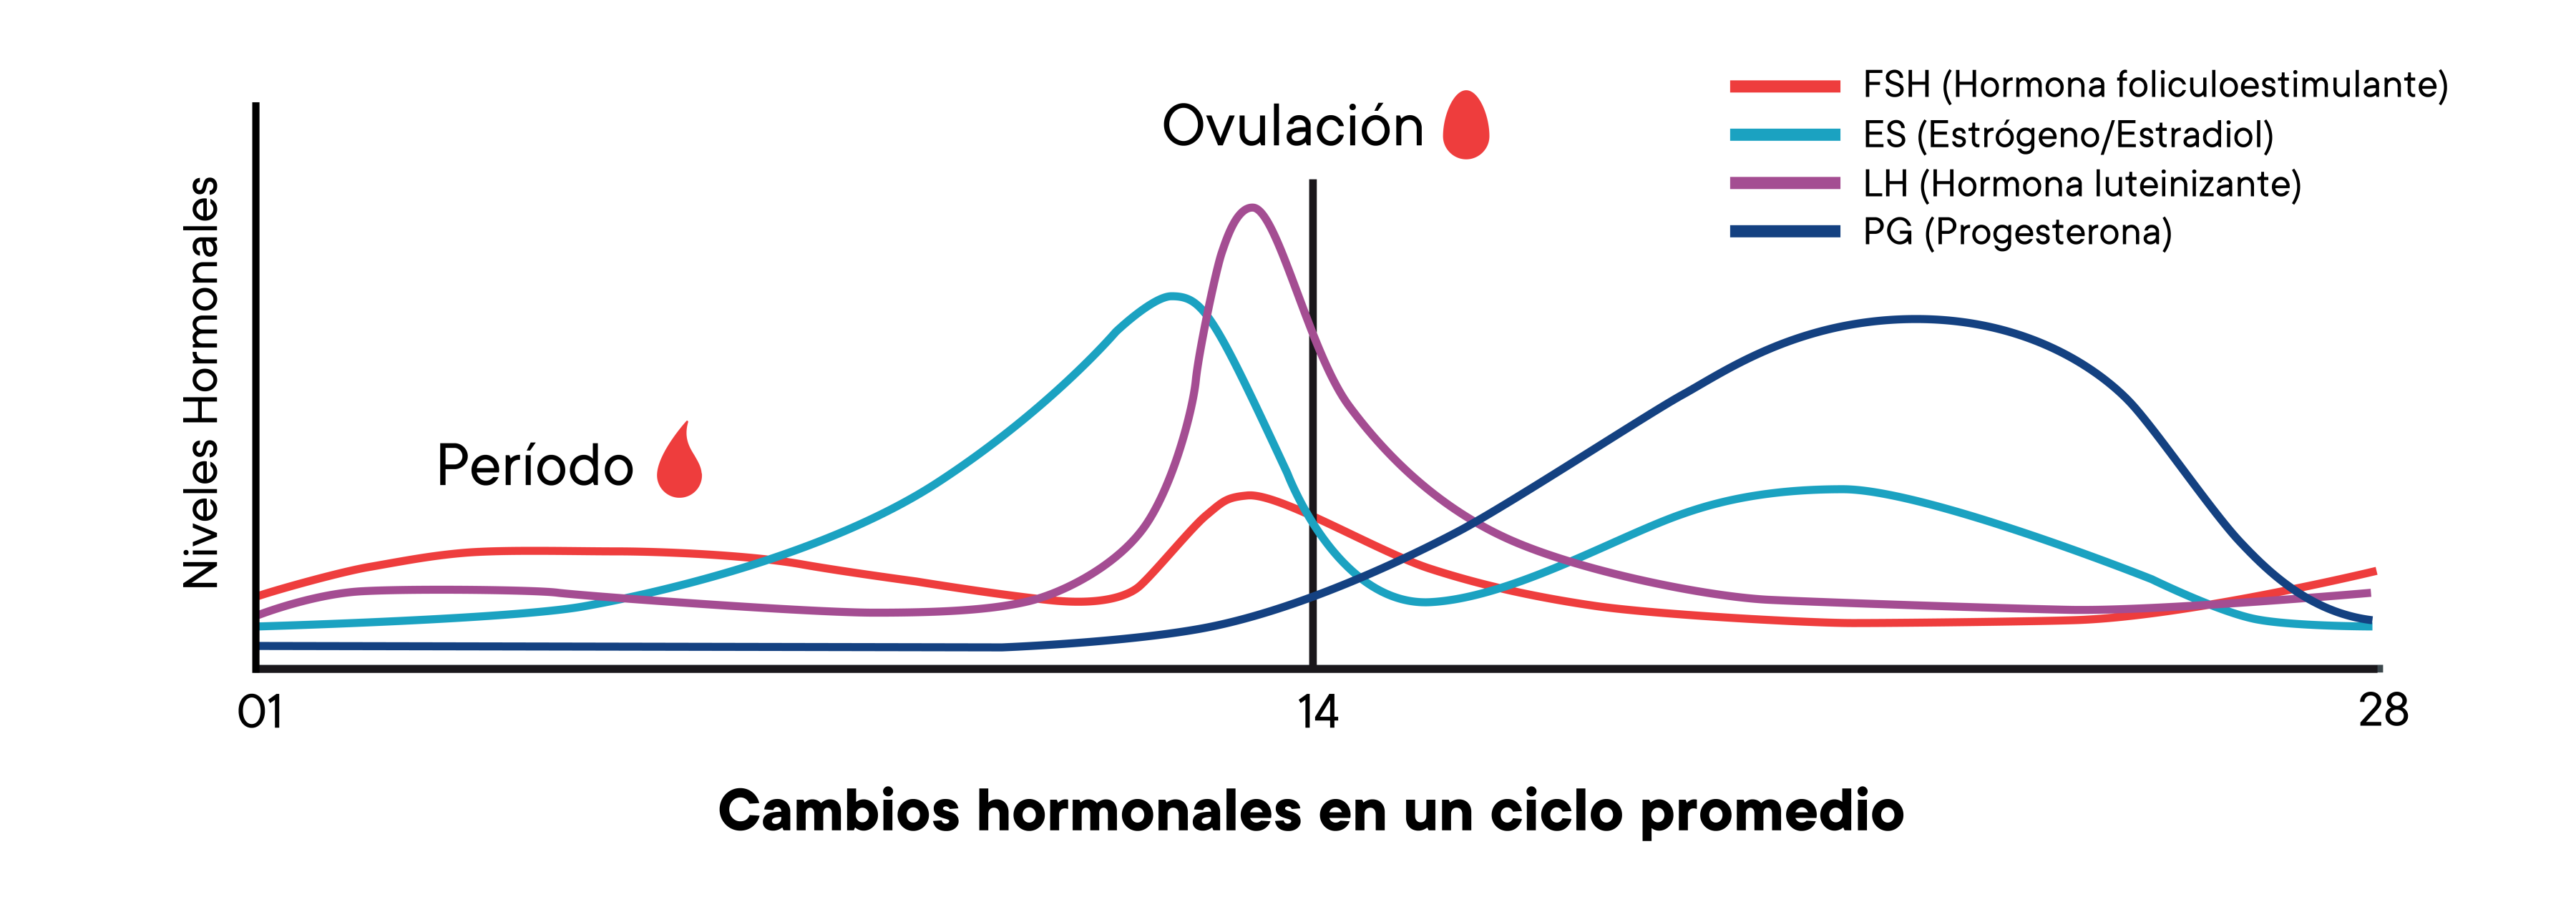 Un gráfico que muestra los cambios de los niveles hormonales en un ciclo promedio a lo largo del tiempo.